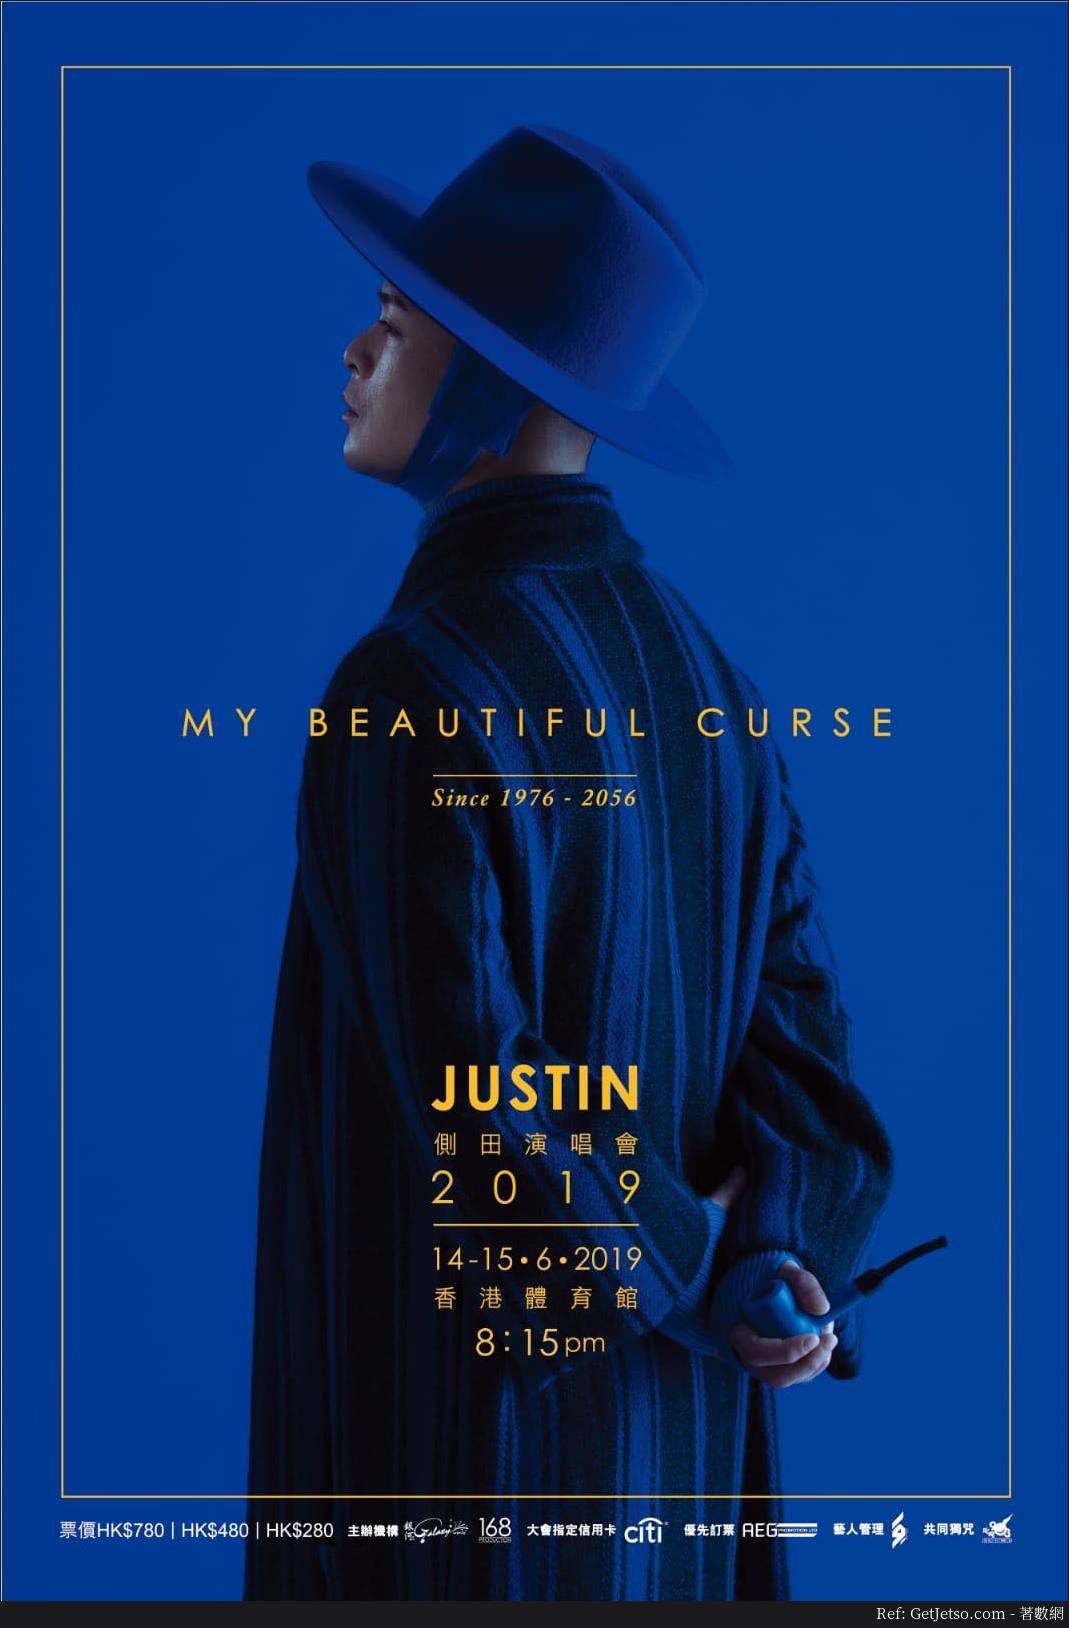 側田My Beautiful Curse演唱會2019優先訂票優惠@Citi信用卡(19年2月25-27日)圖片1